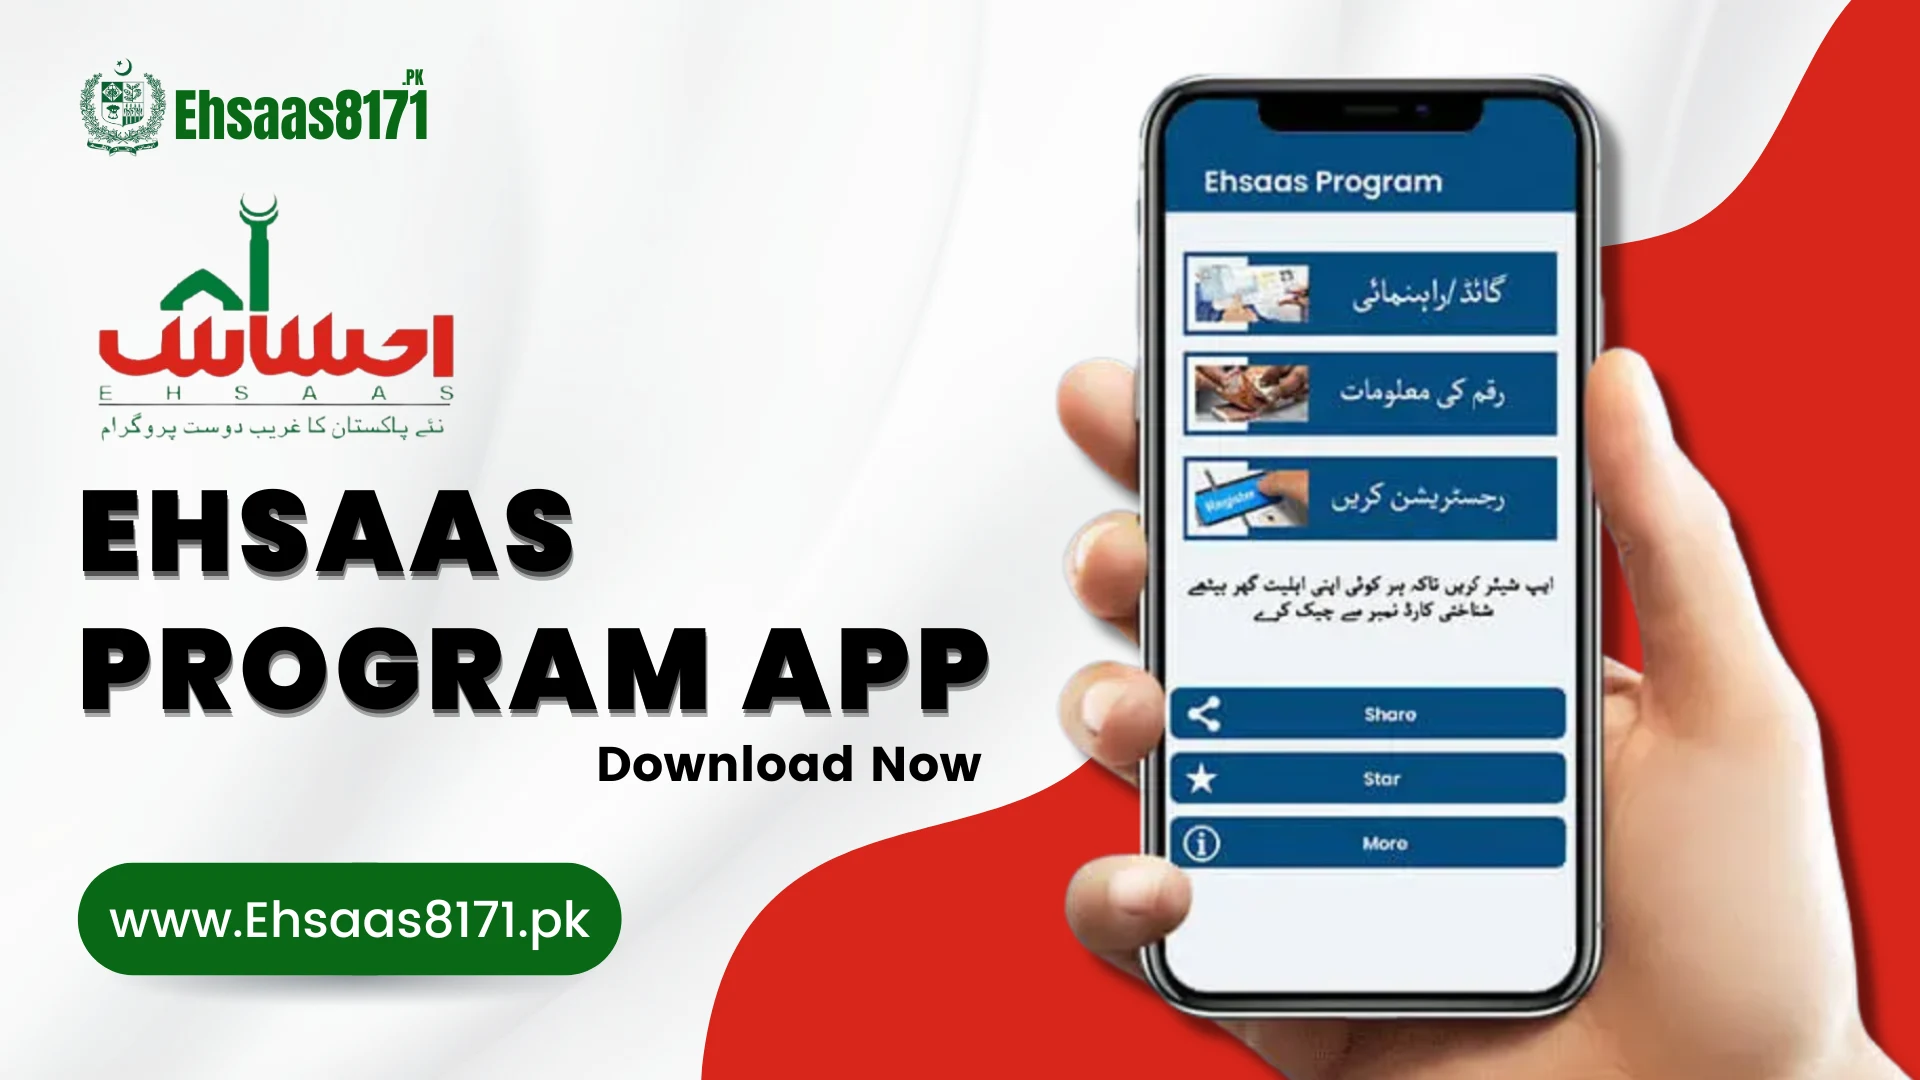 Ehsaas program app